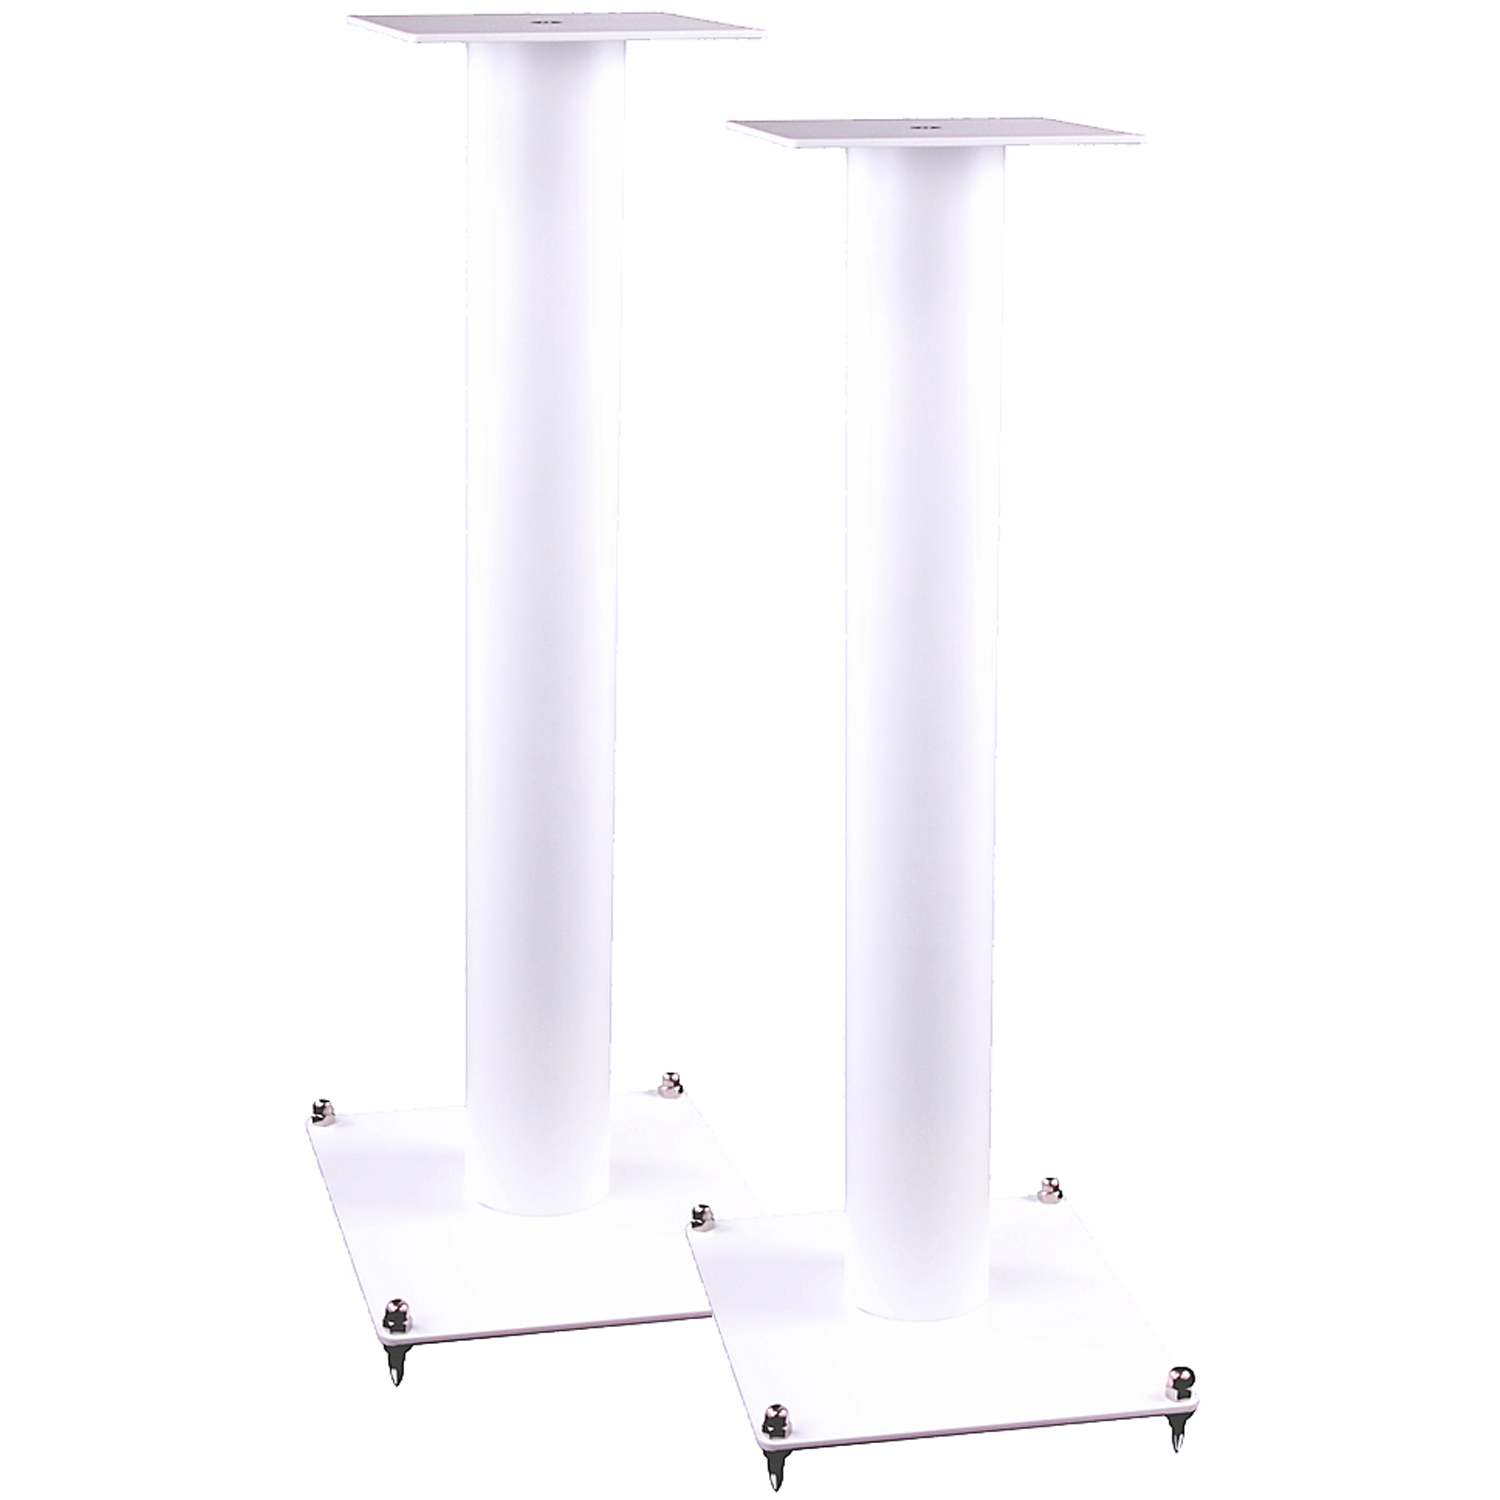 Doe mee Raffinaderij Ophef KEF GFS-124 Pair Speakers Stands White | Accessories4less